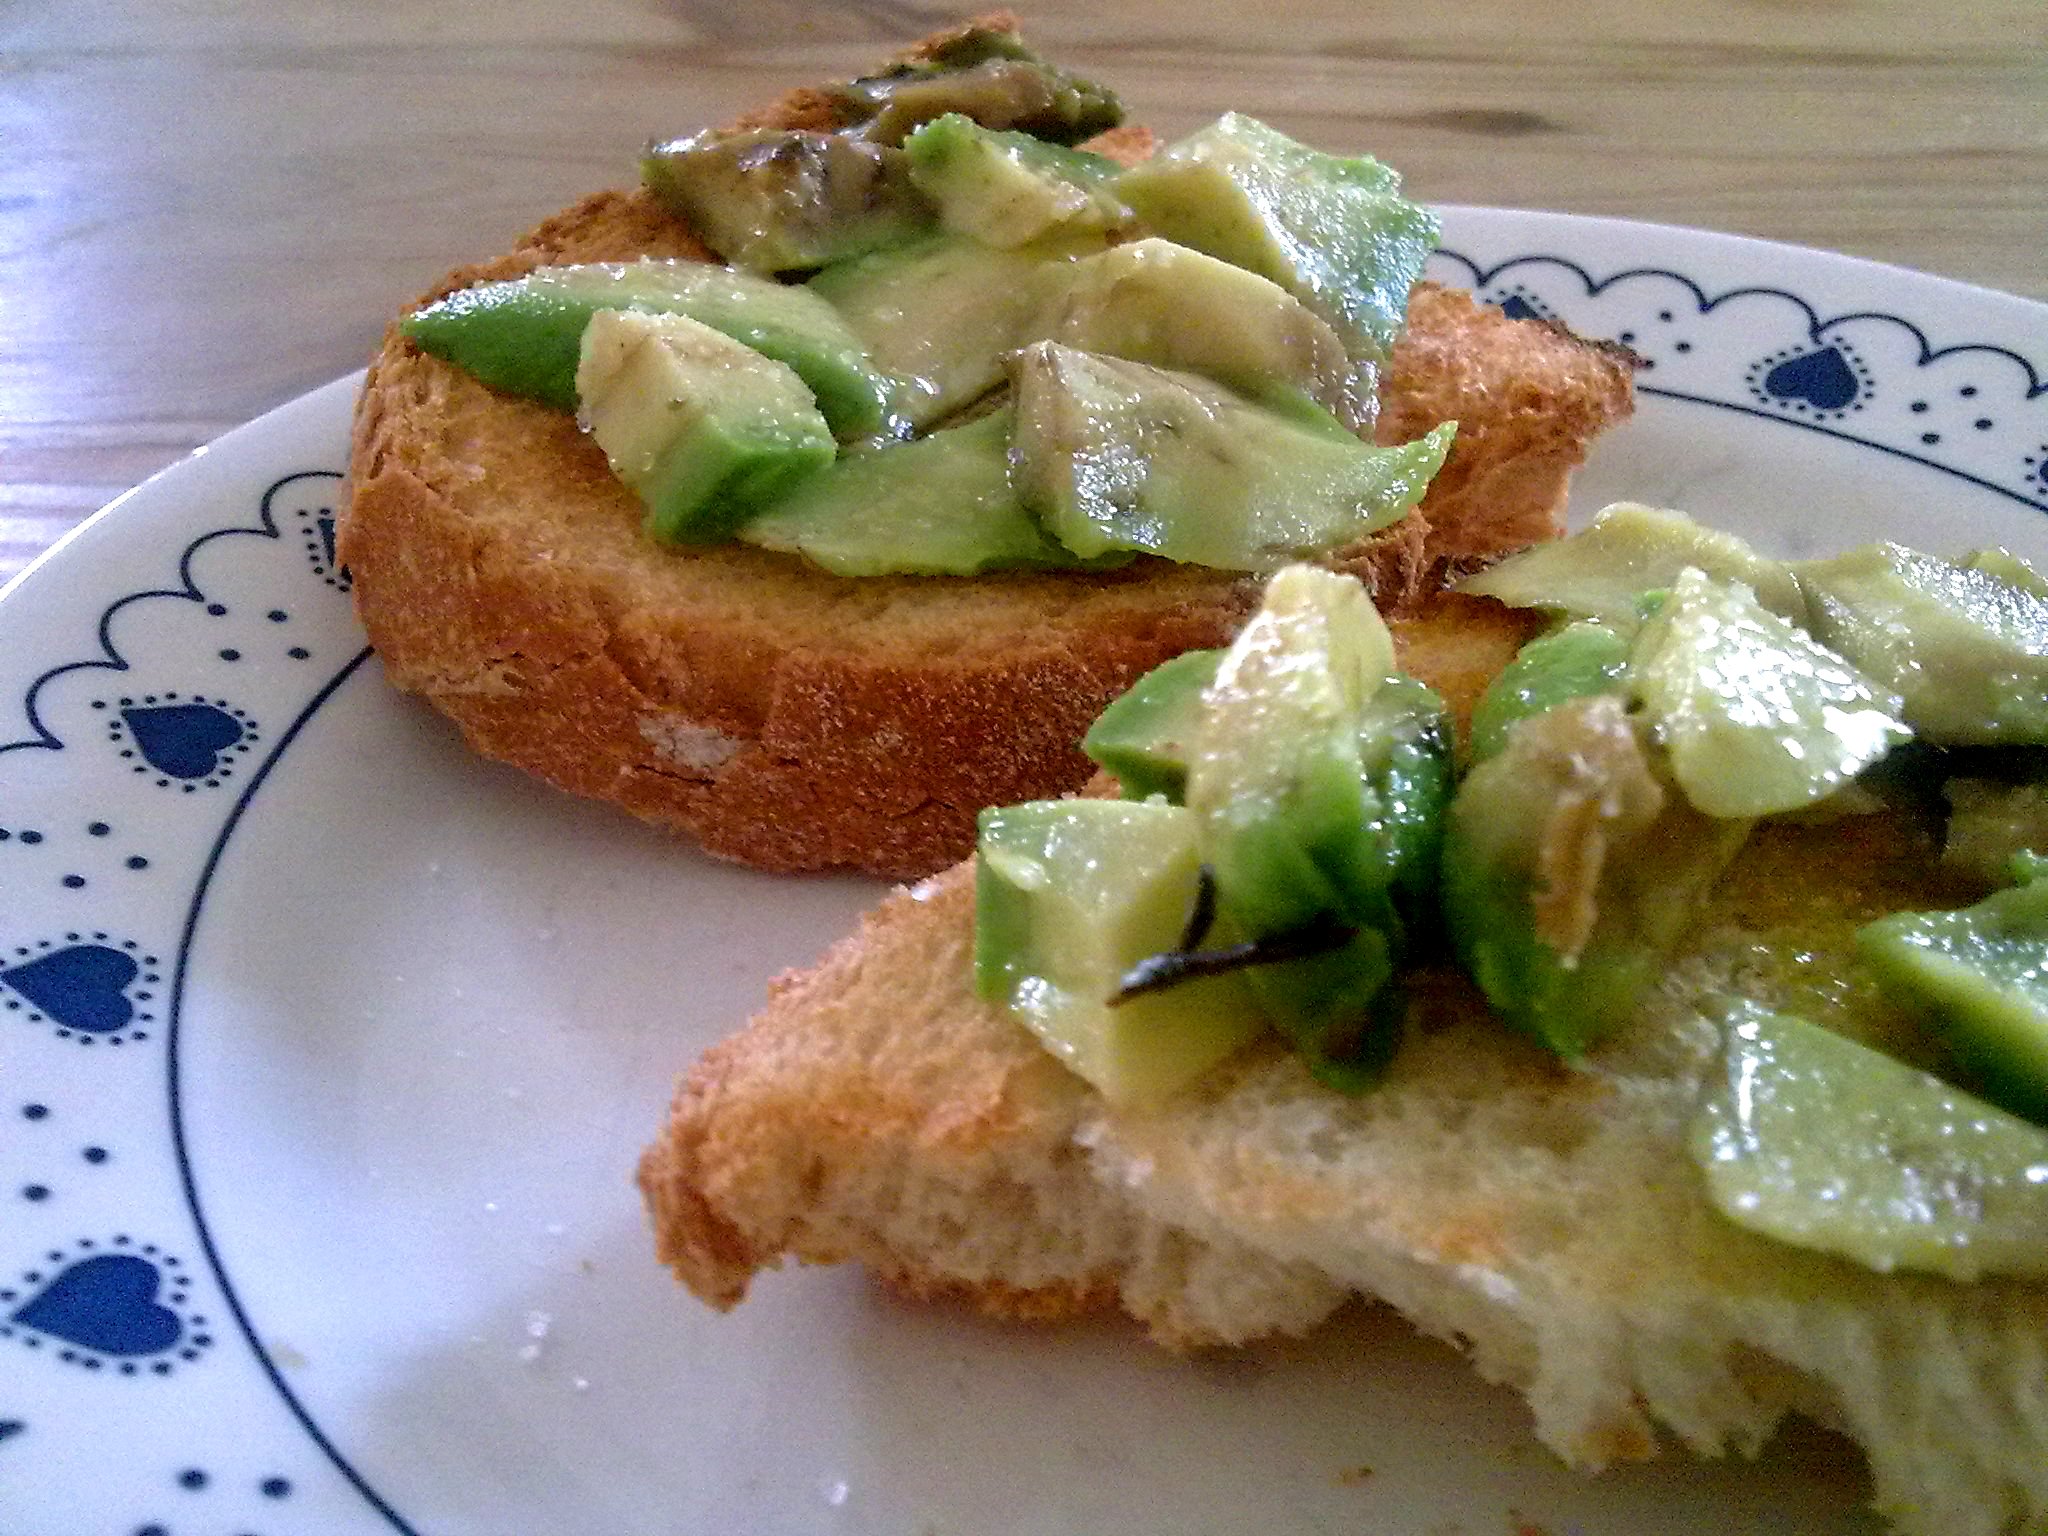 Avocado and bread / Tostadas con aguacate